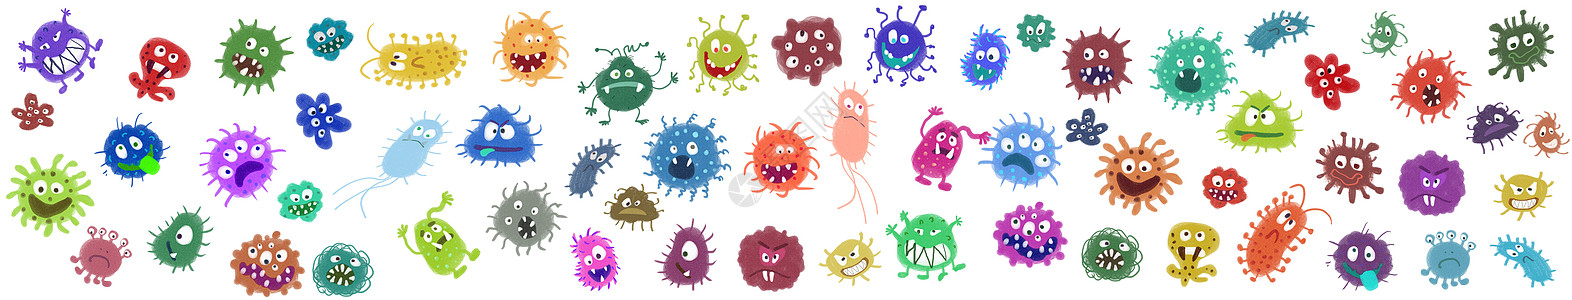 细菌病毒元素图片素材